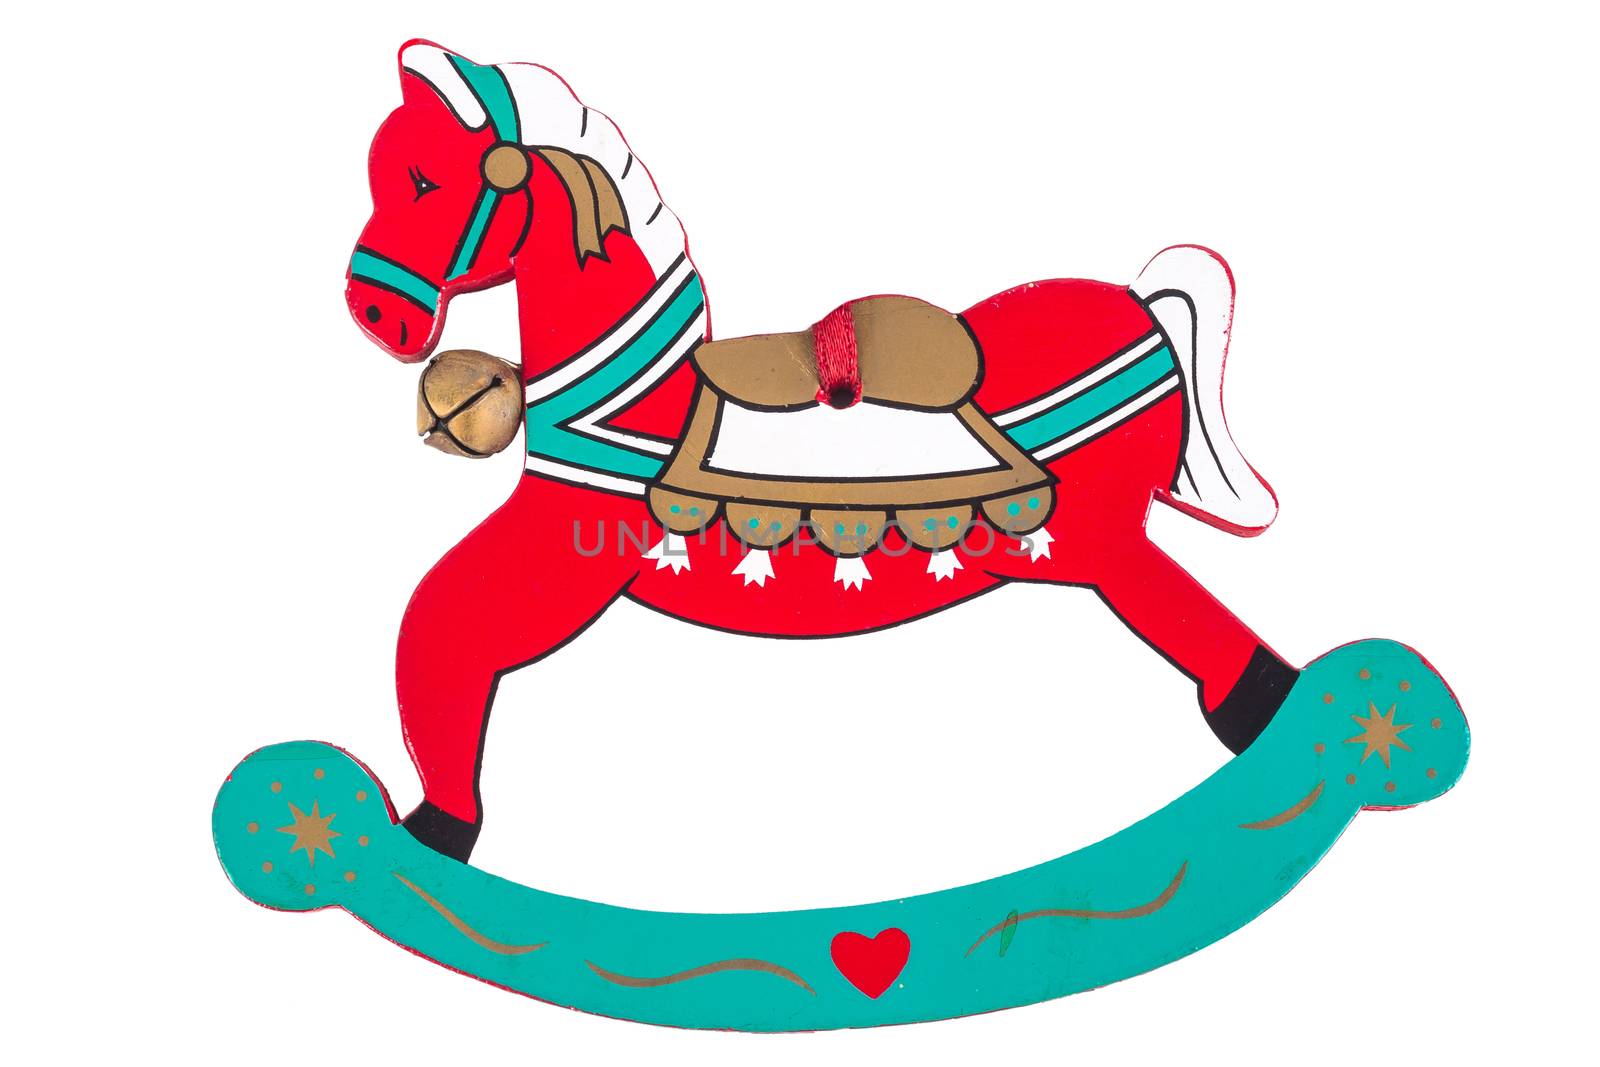 Christmas toy, Rocking horse isolated on white background